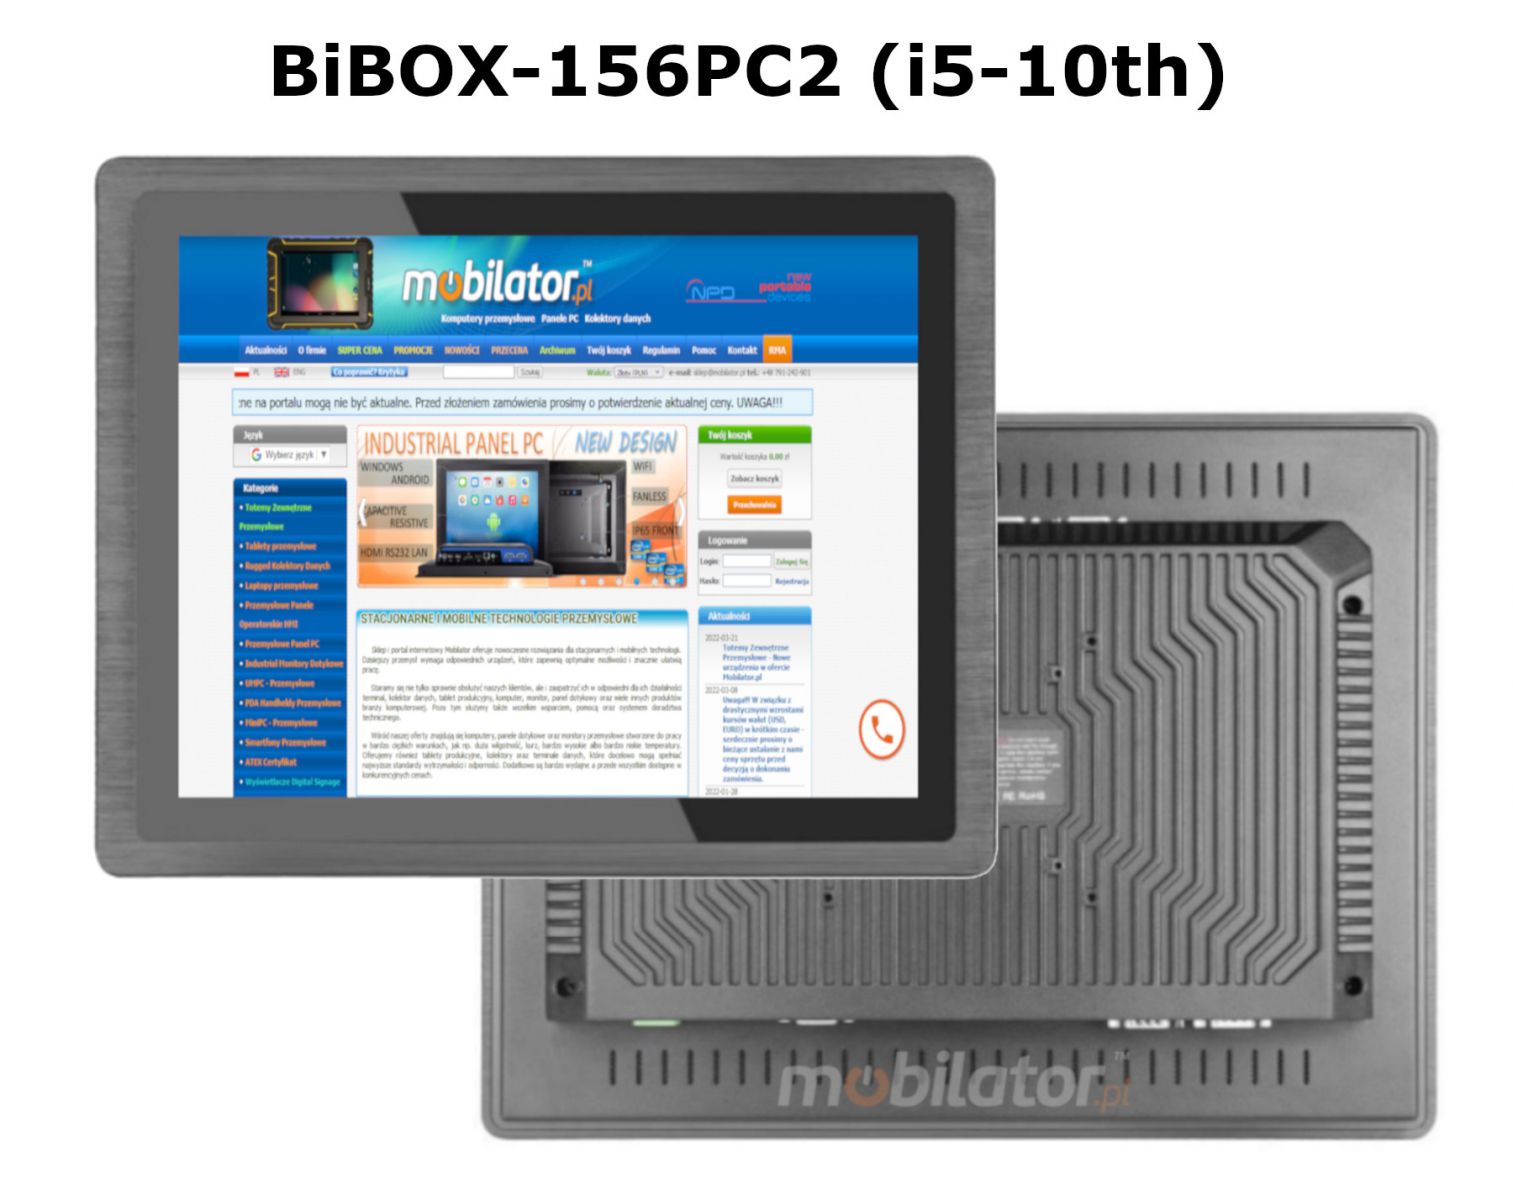 pojemny panel BIBOX-156PC2 wyposaony w czno 4G